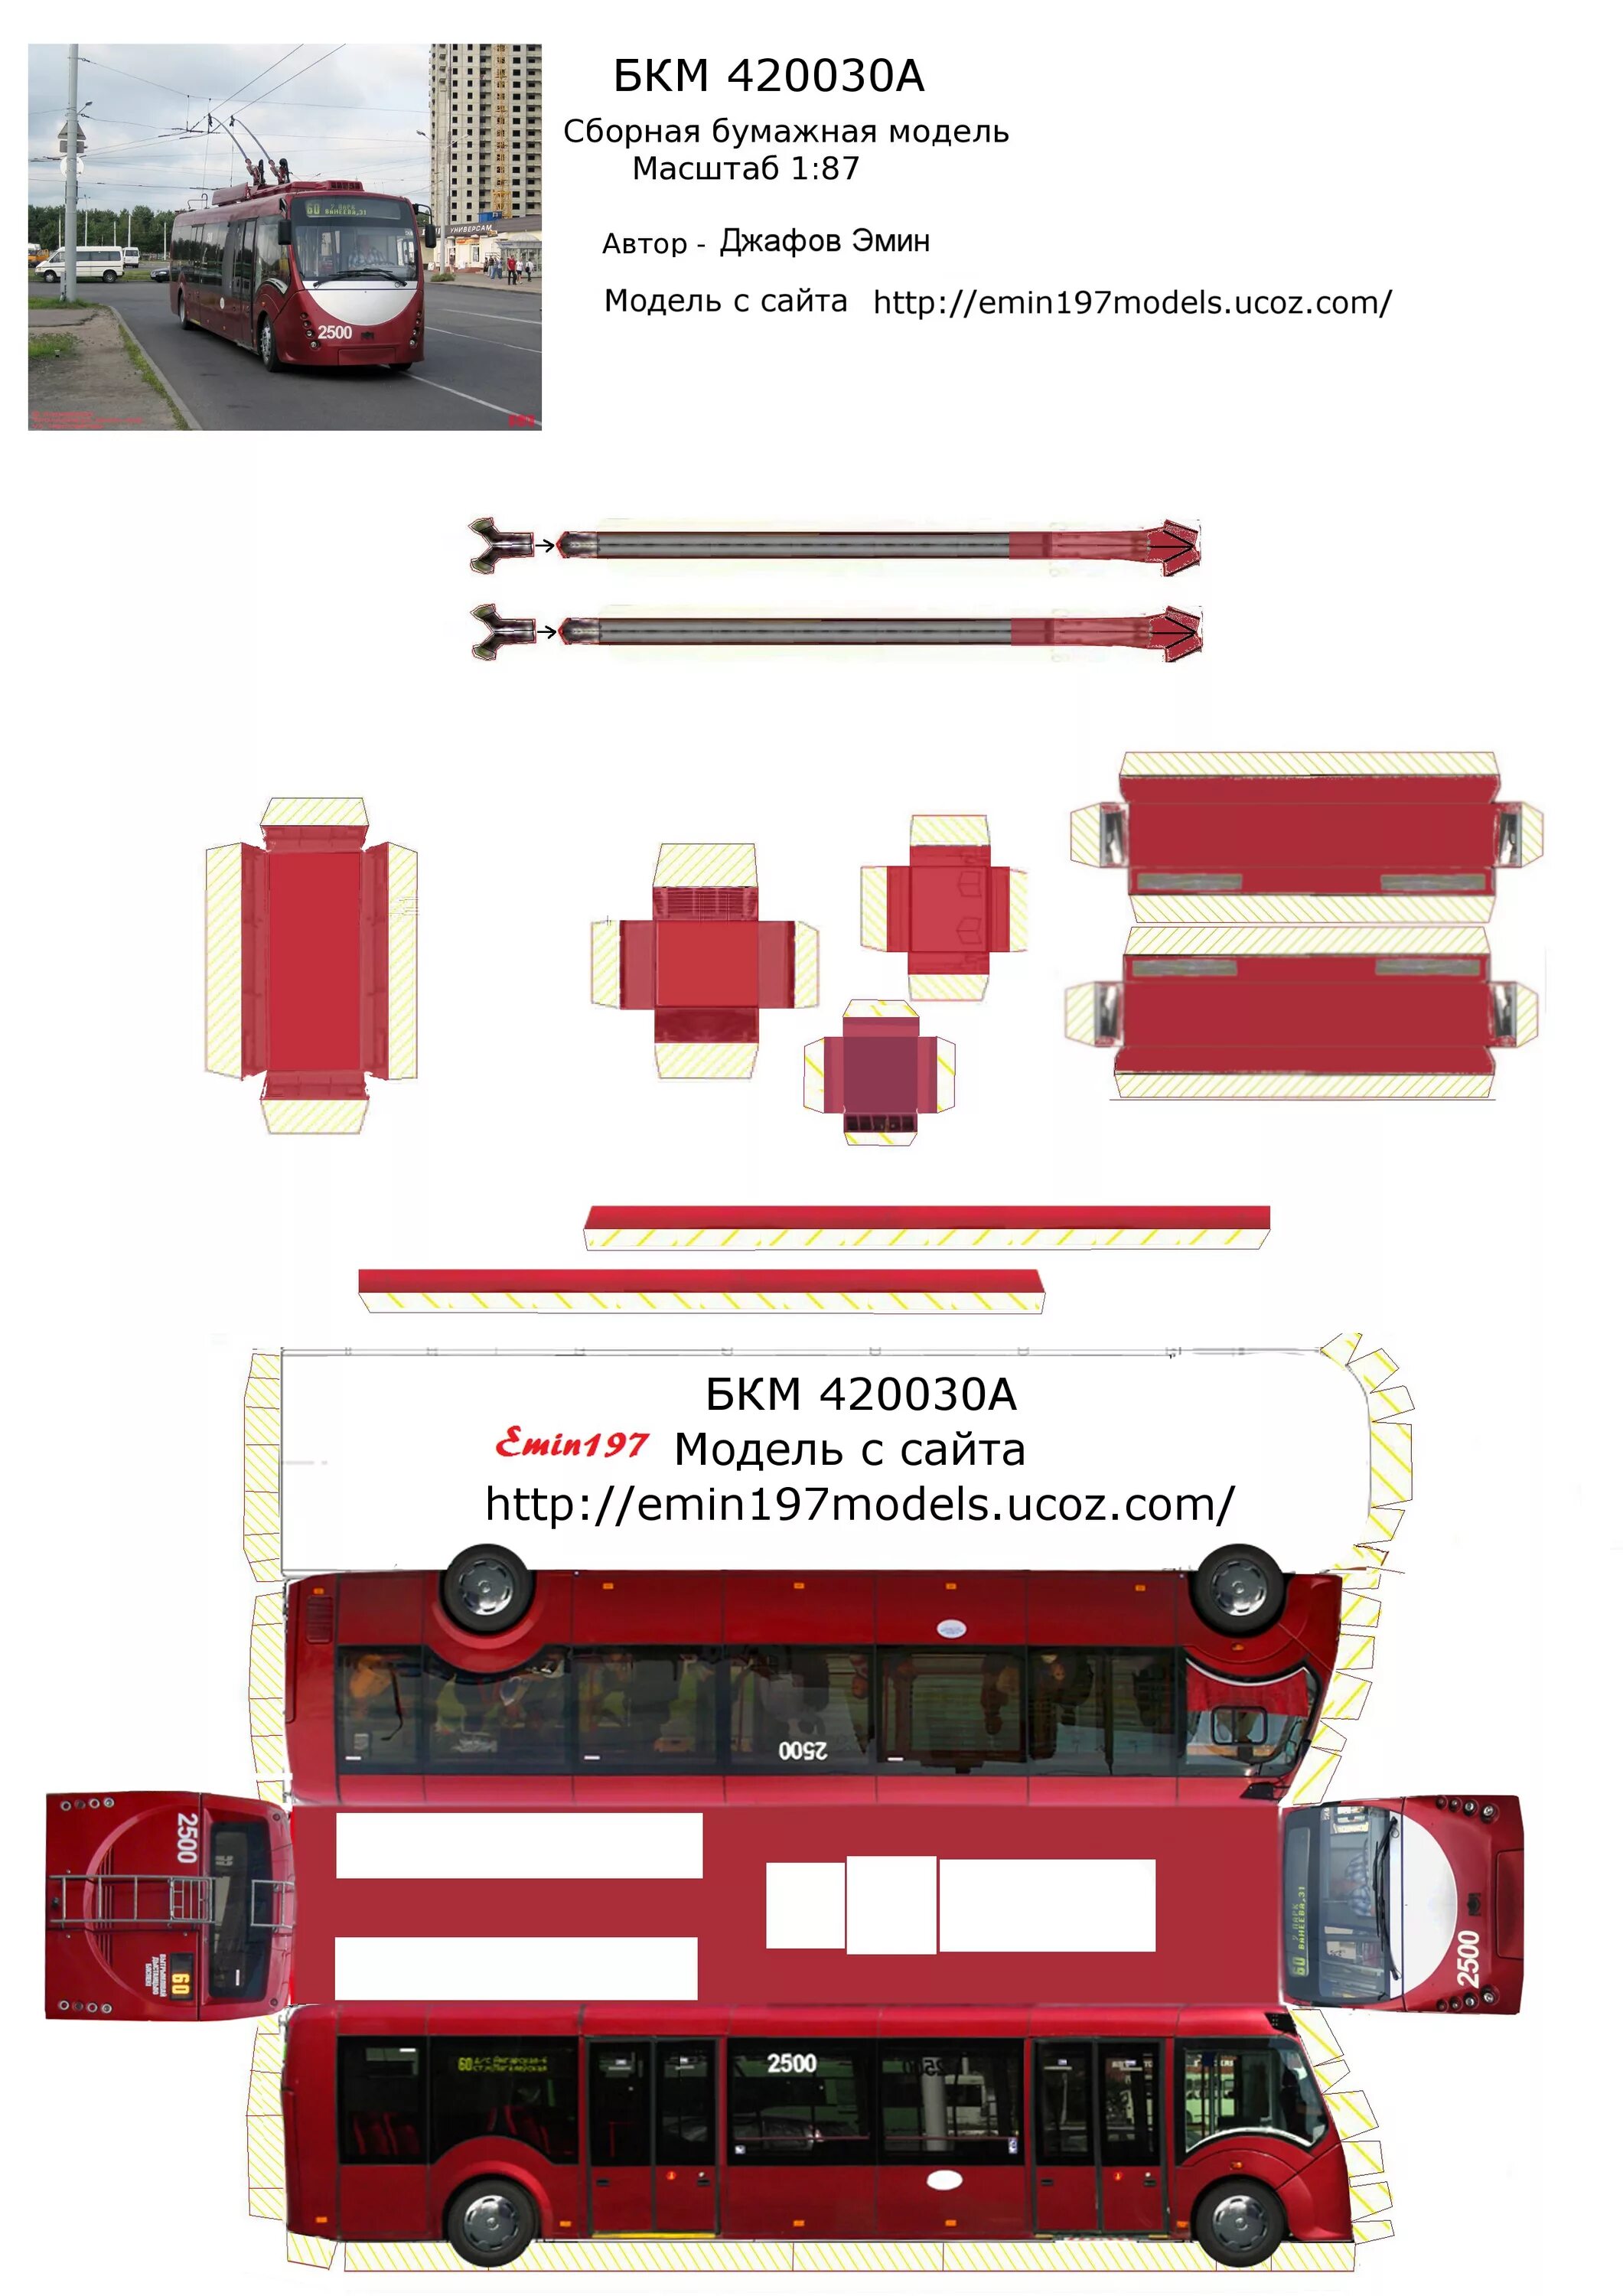 Бумажная модель троллейбуса БКМ 321. БКМ 321 развёртка. Развертка троллейбуса. Развертка бумажный троллейбус.